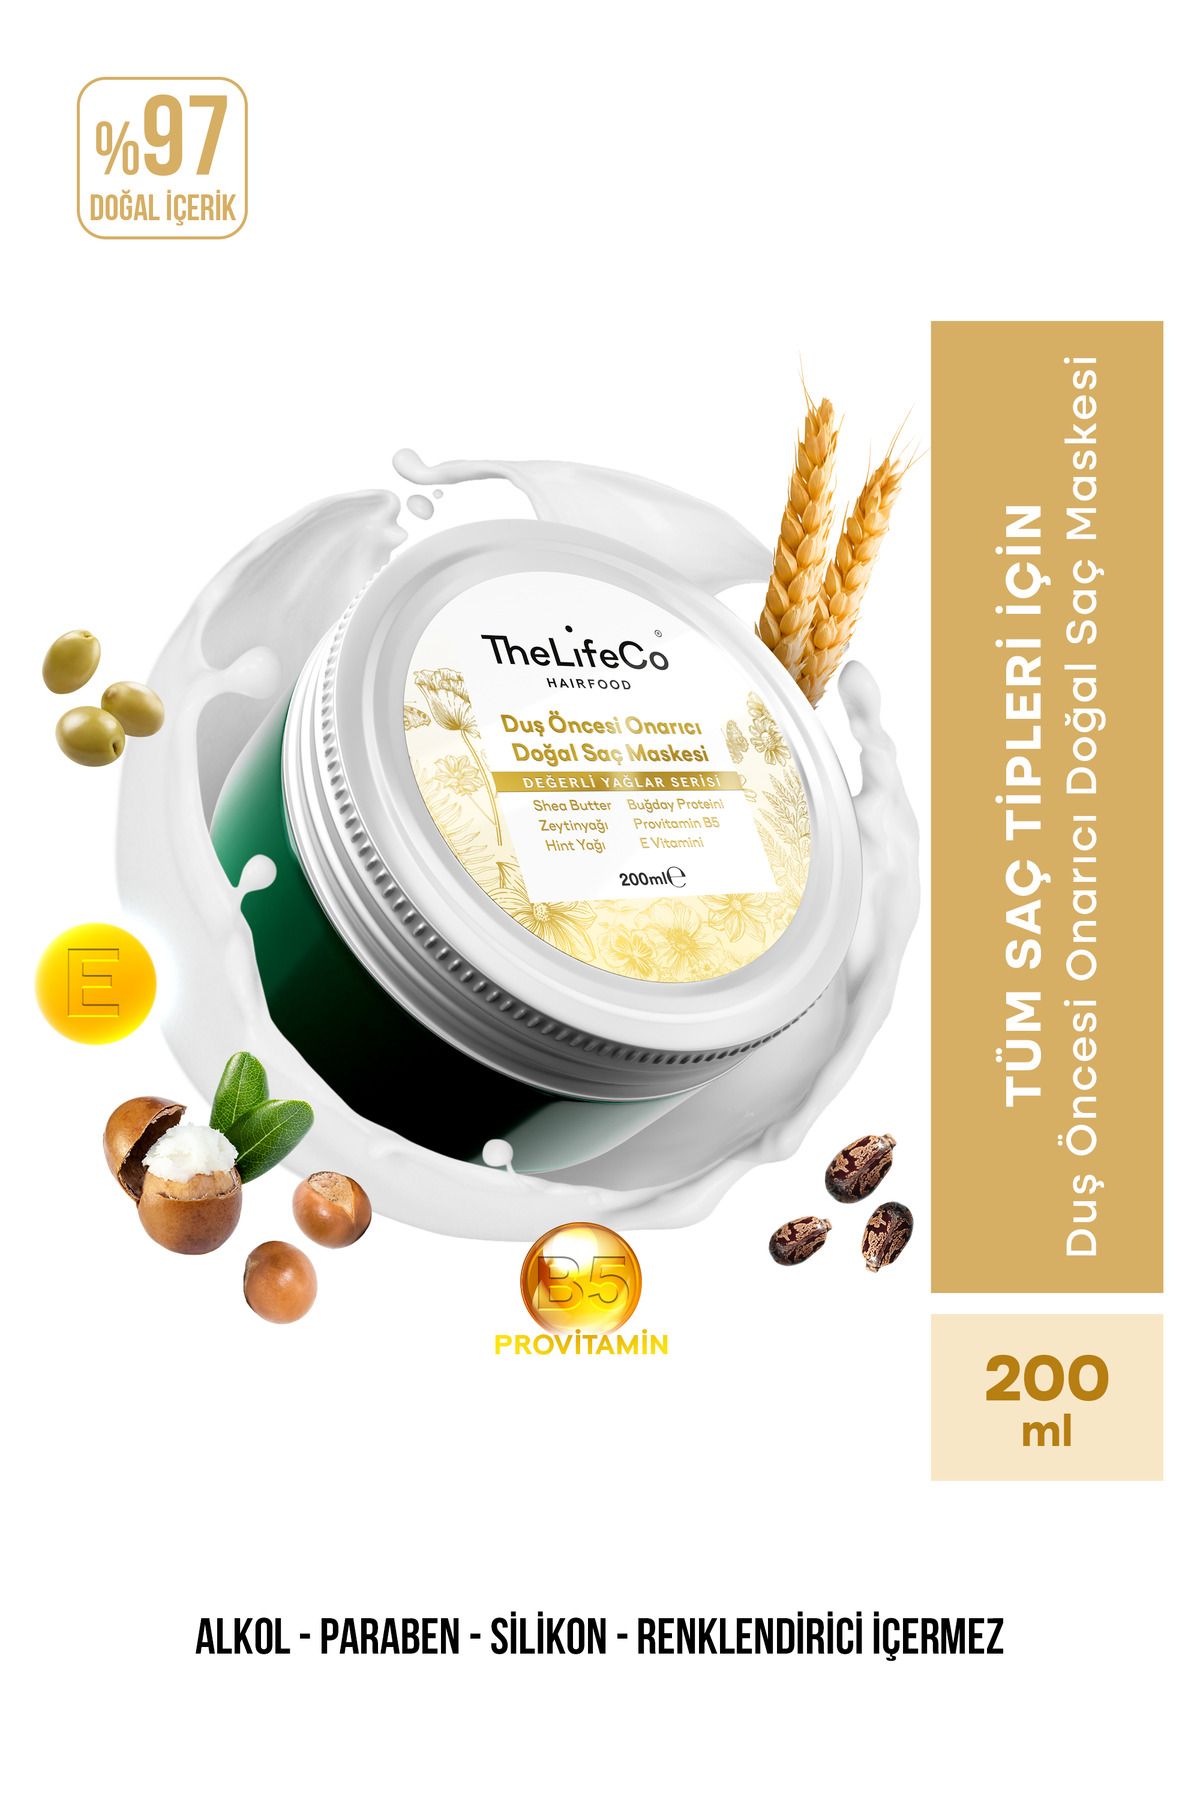 TheLifeCo Hairfood Değerli Yağlar Serisi Duş Öncesi Onarıcı Doğal Saç Maskesi 200ml